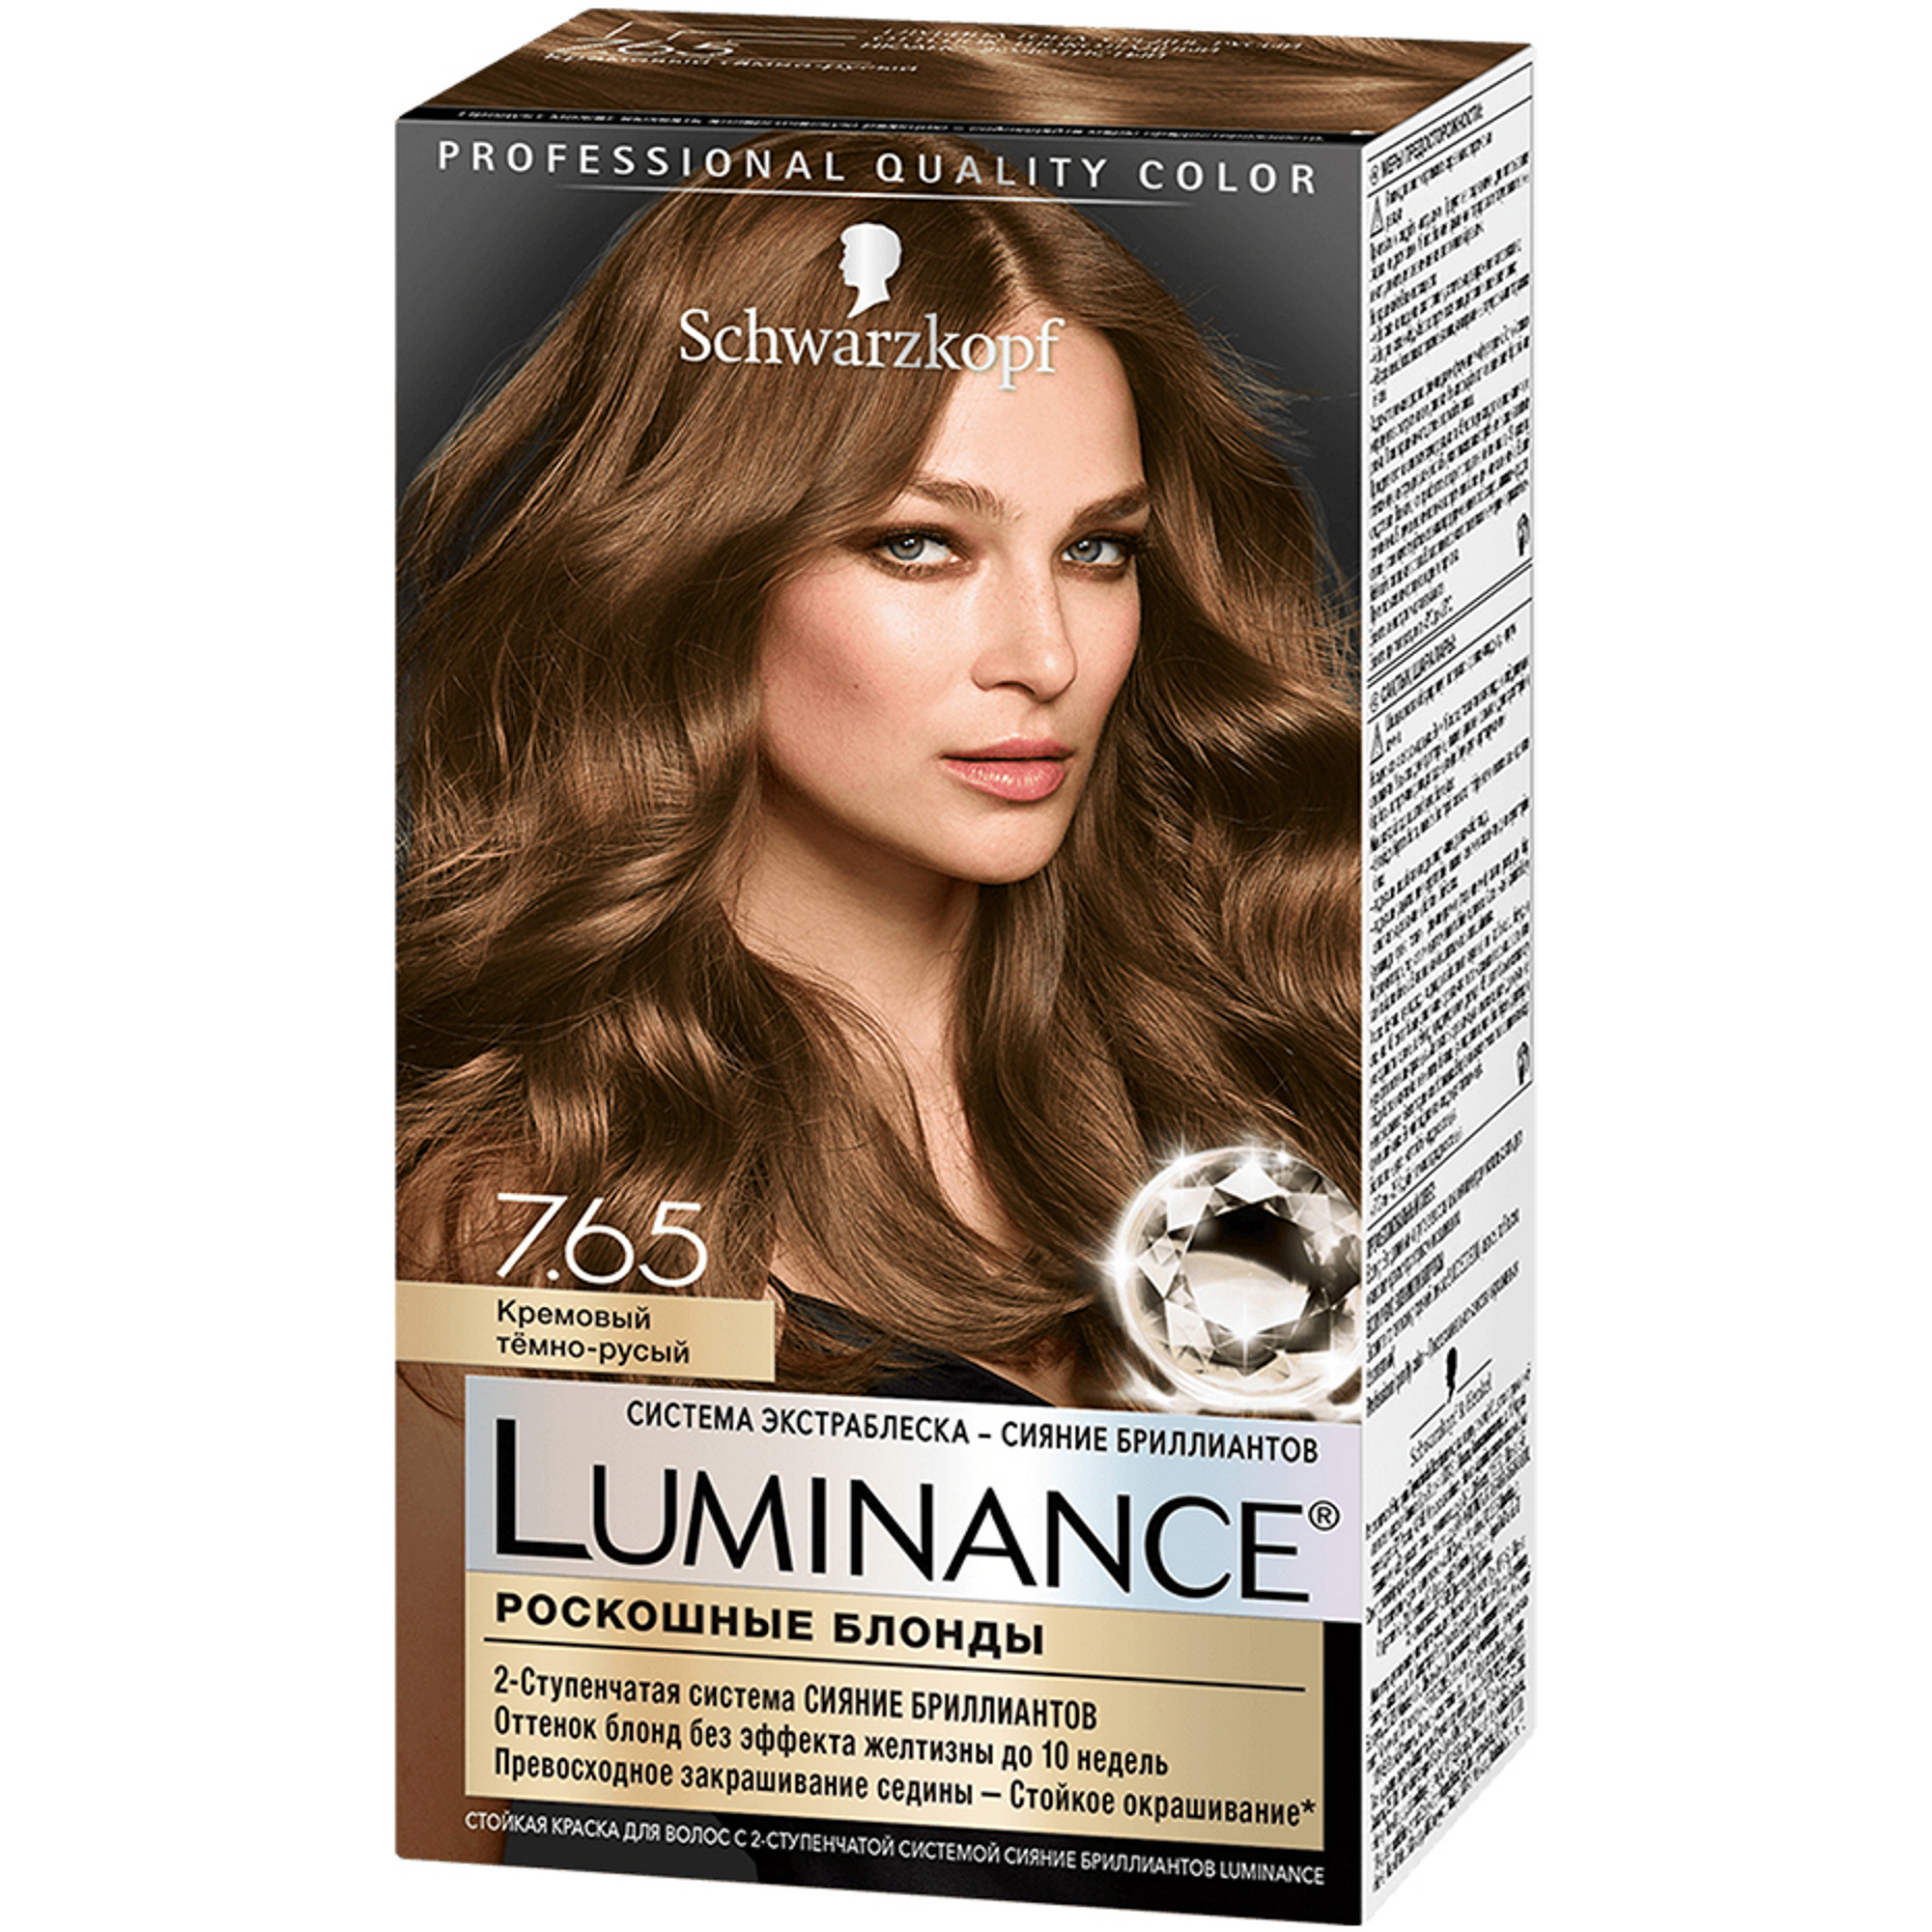 Краска для волос Schwarzkopf Luminance Color 7.65 Кремовый темно-русый краска для волос 7 65 кремовый темно русый luminance люминенс 165мл